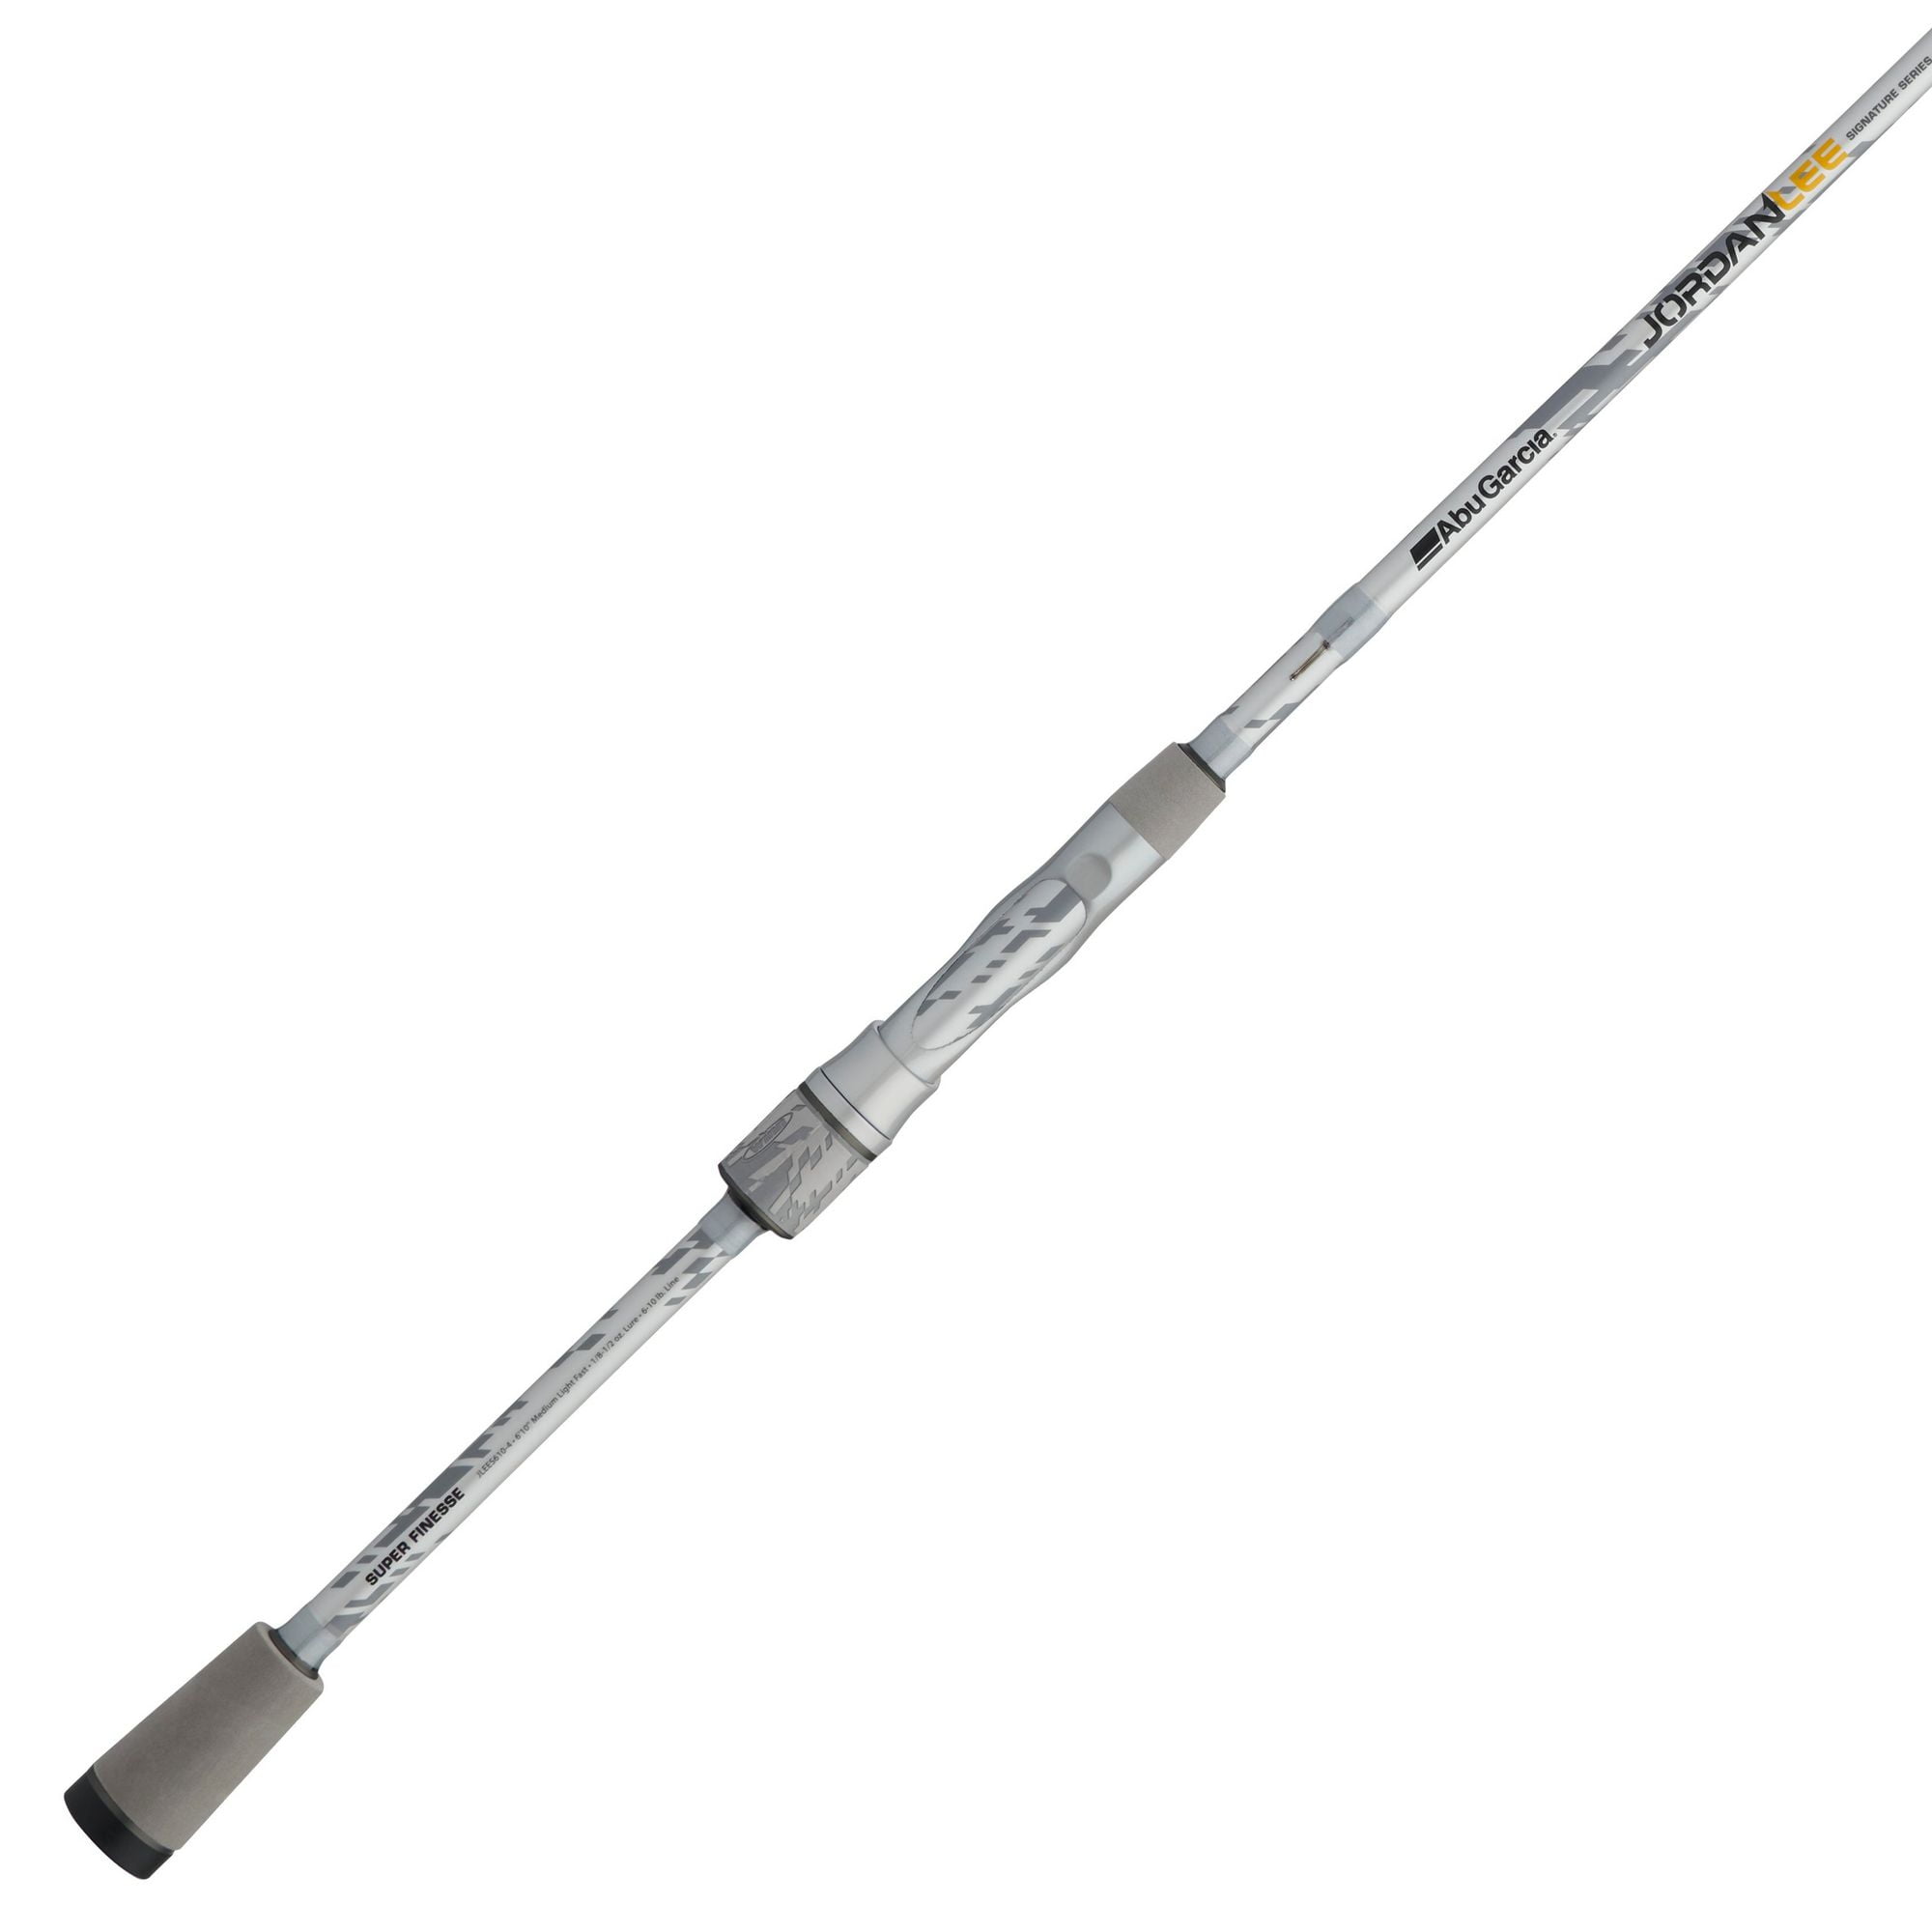 Abu Garcia MEDIUM LIGHT Jordan Lee Fishing Rod, 6'10” Piece